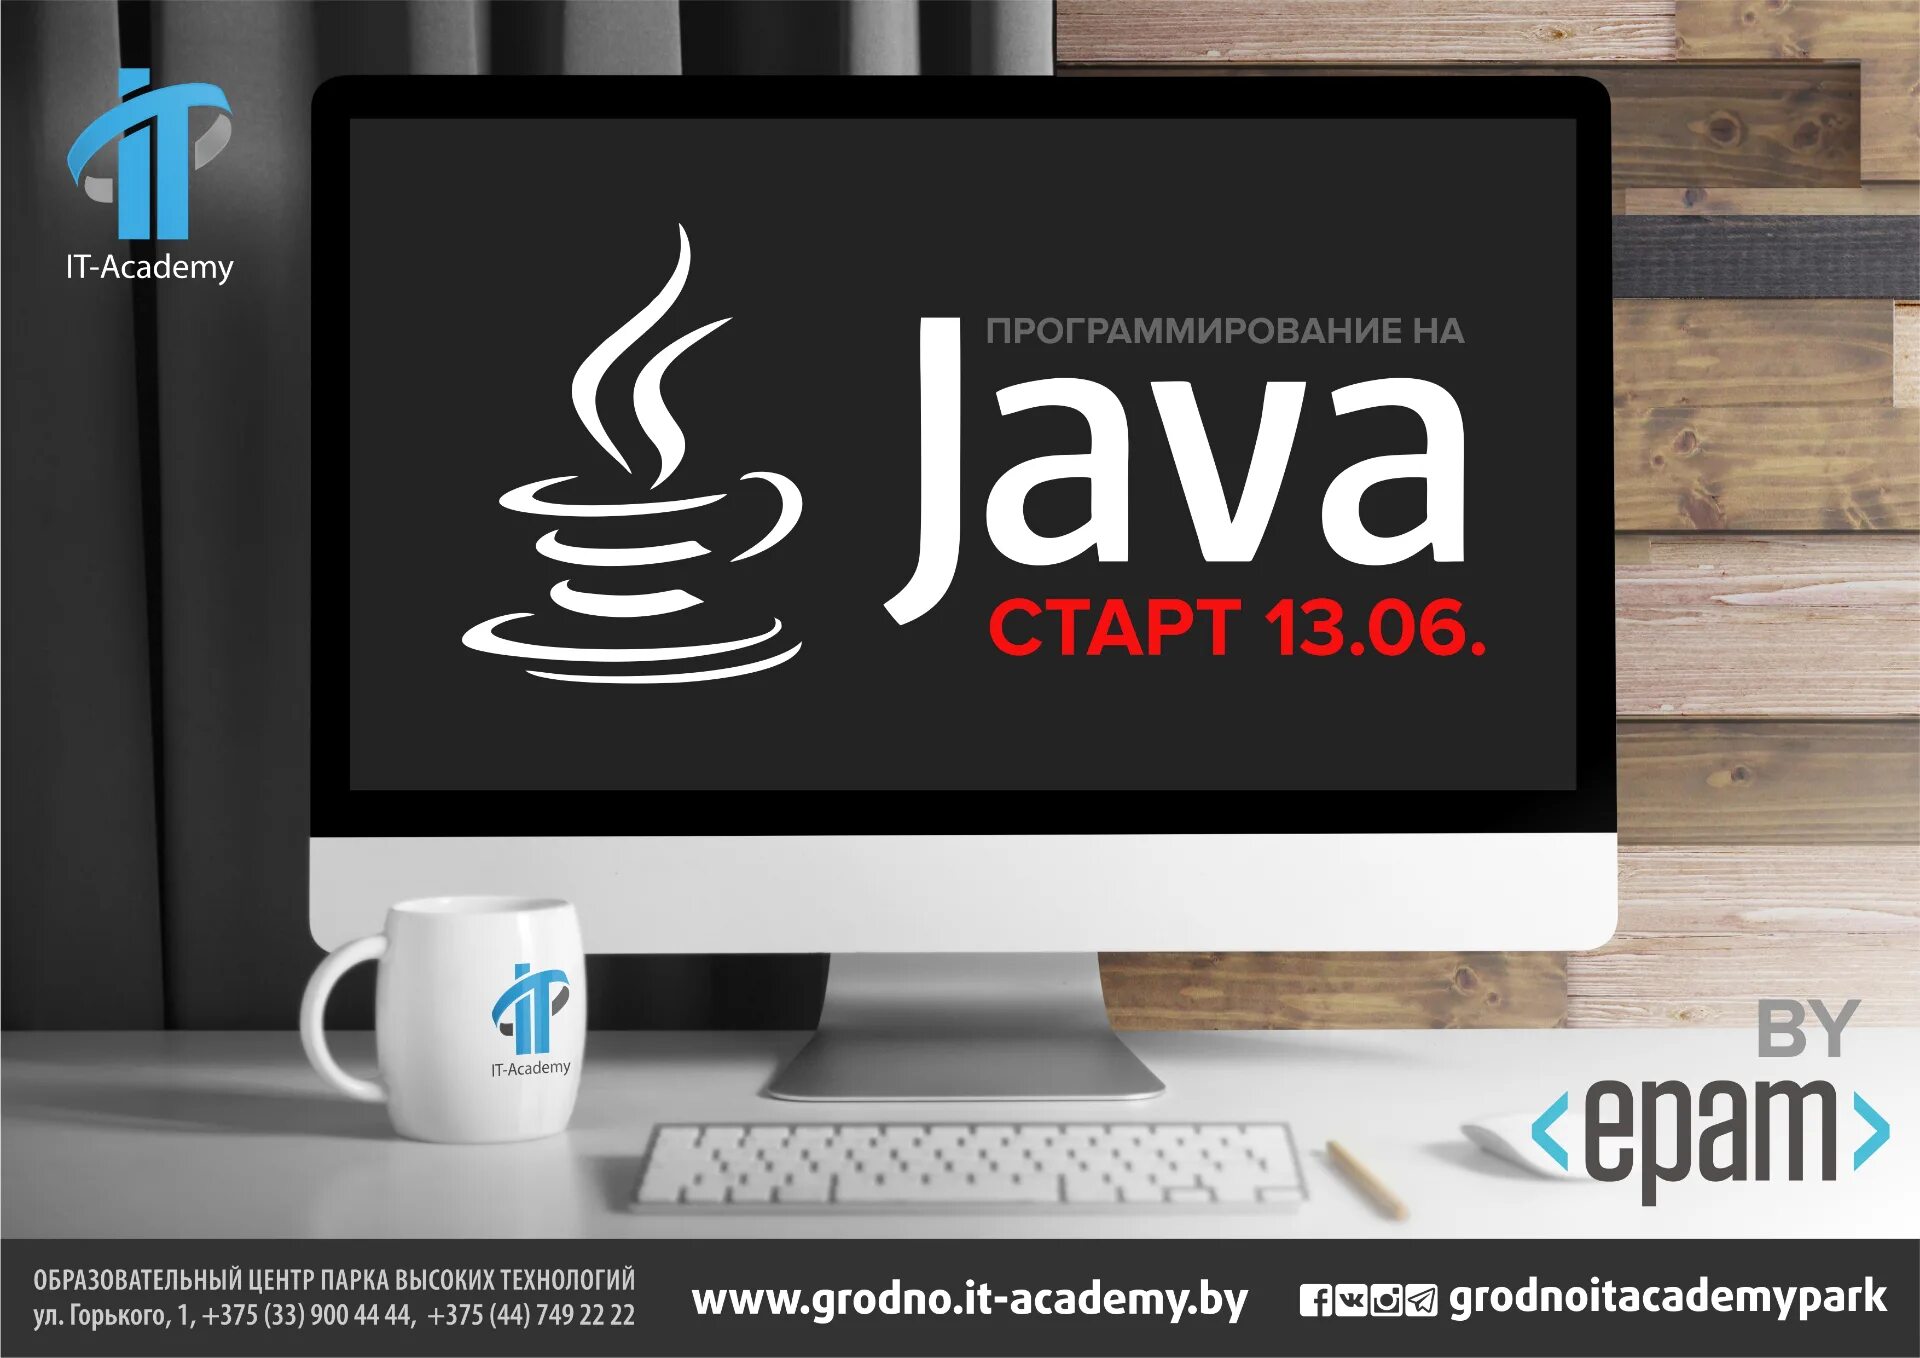 Java views. Java dasturlash. Java программирование. Java курсы. Система программирования java.